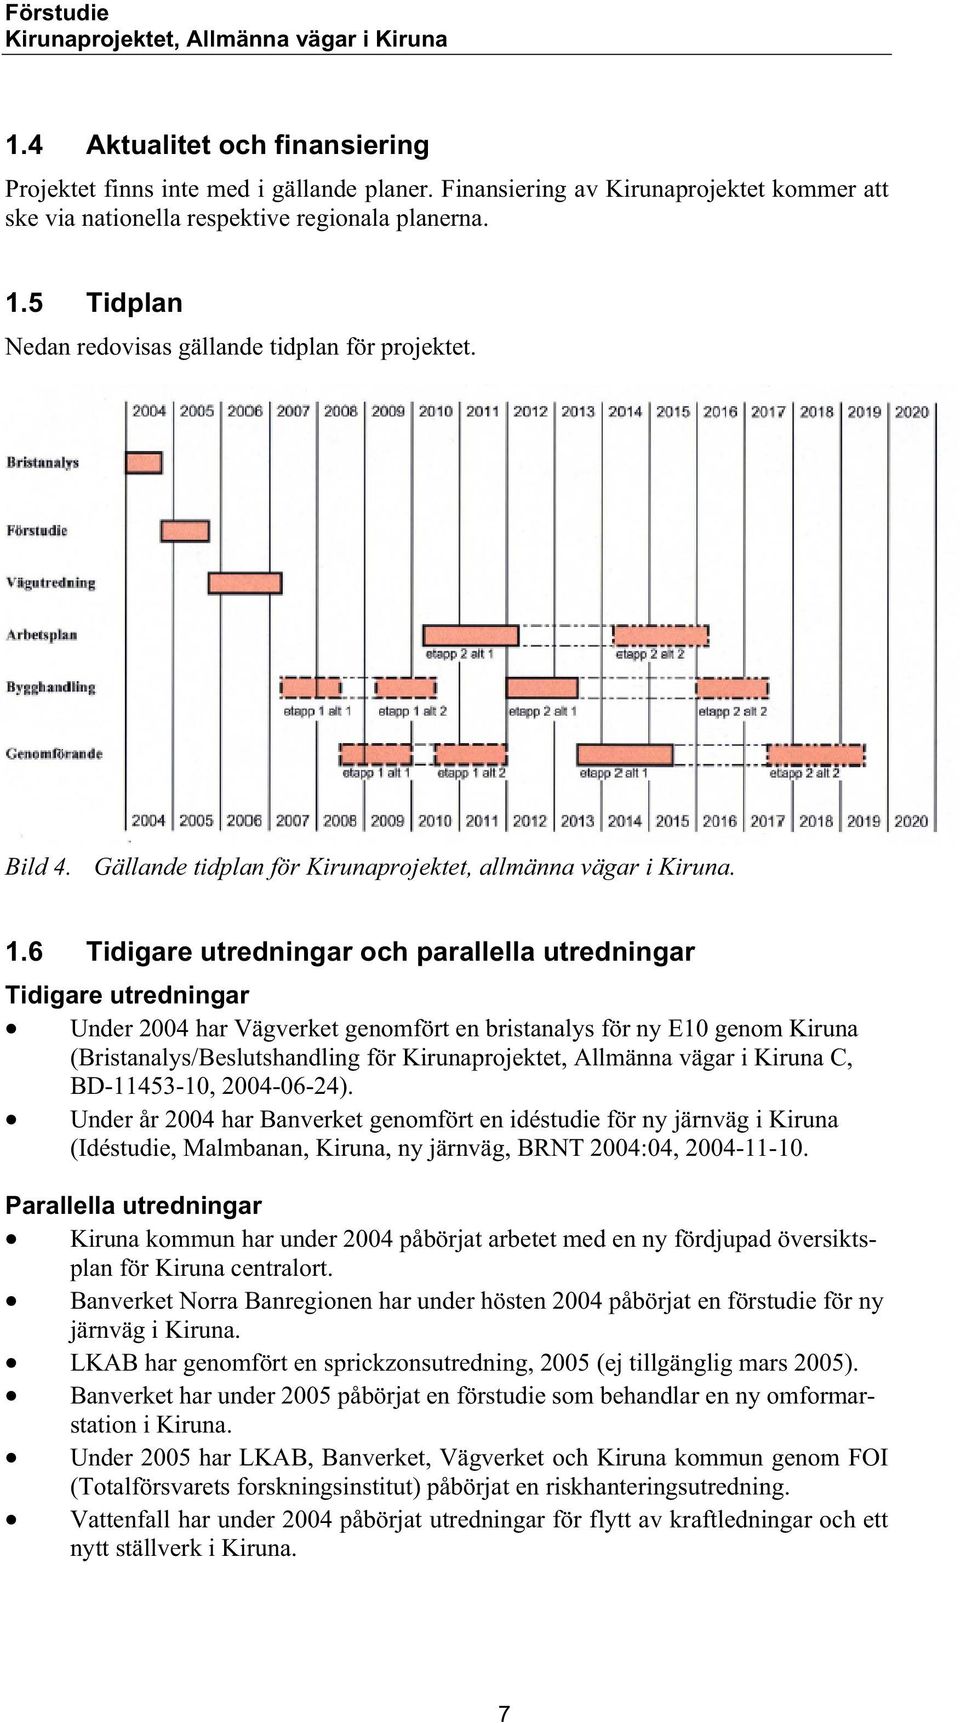 6 Tidigare utredningar och parallella utredningar Tidigare utredningar Under 2004 har Vägverket genomfört en bristanalys för ny E10 genom Kiruna (Bristanalys/Beslutshandling för C, BD-11453-10,